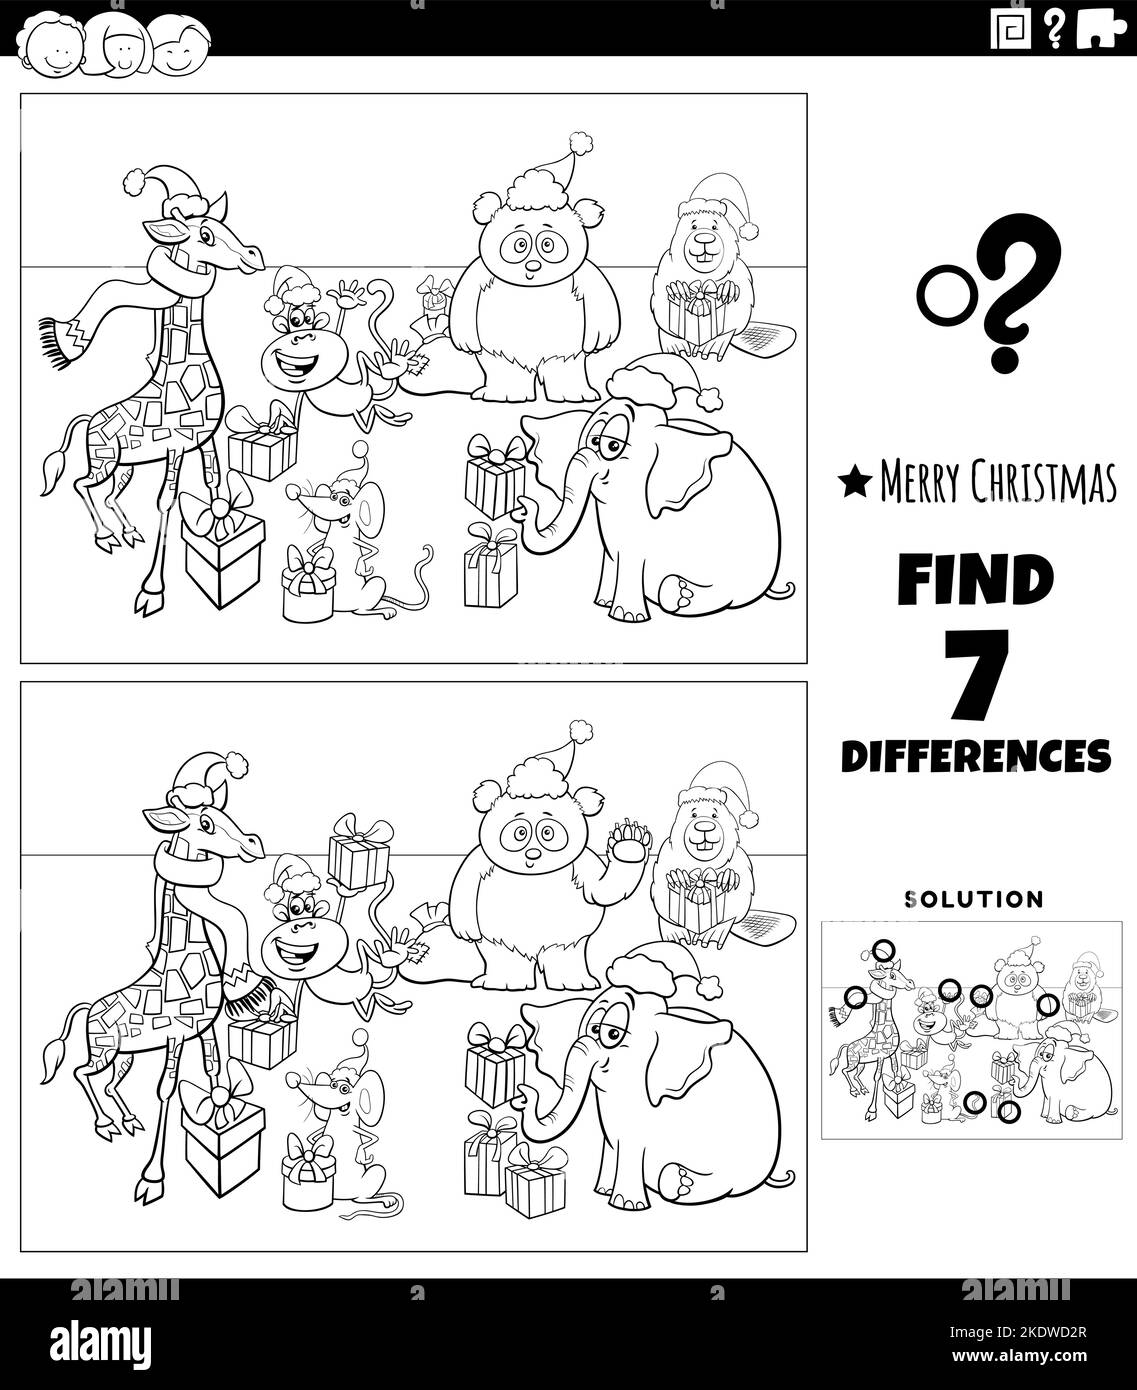 Schwarz-Weiß-Cartoon-Illustration der Suche nach Unterschieden zwischen Bildern pädagogische Aktivität für Kinder mit Tierfiguren auf Weihnachten tim Stock Vektor